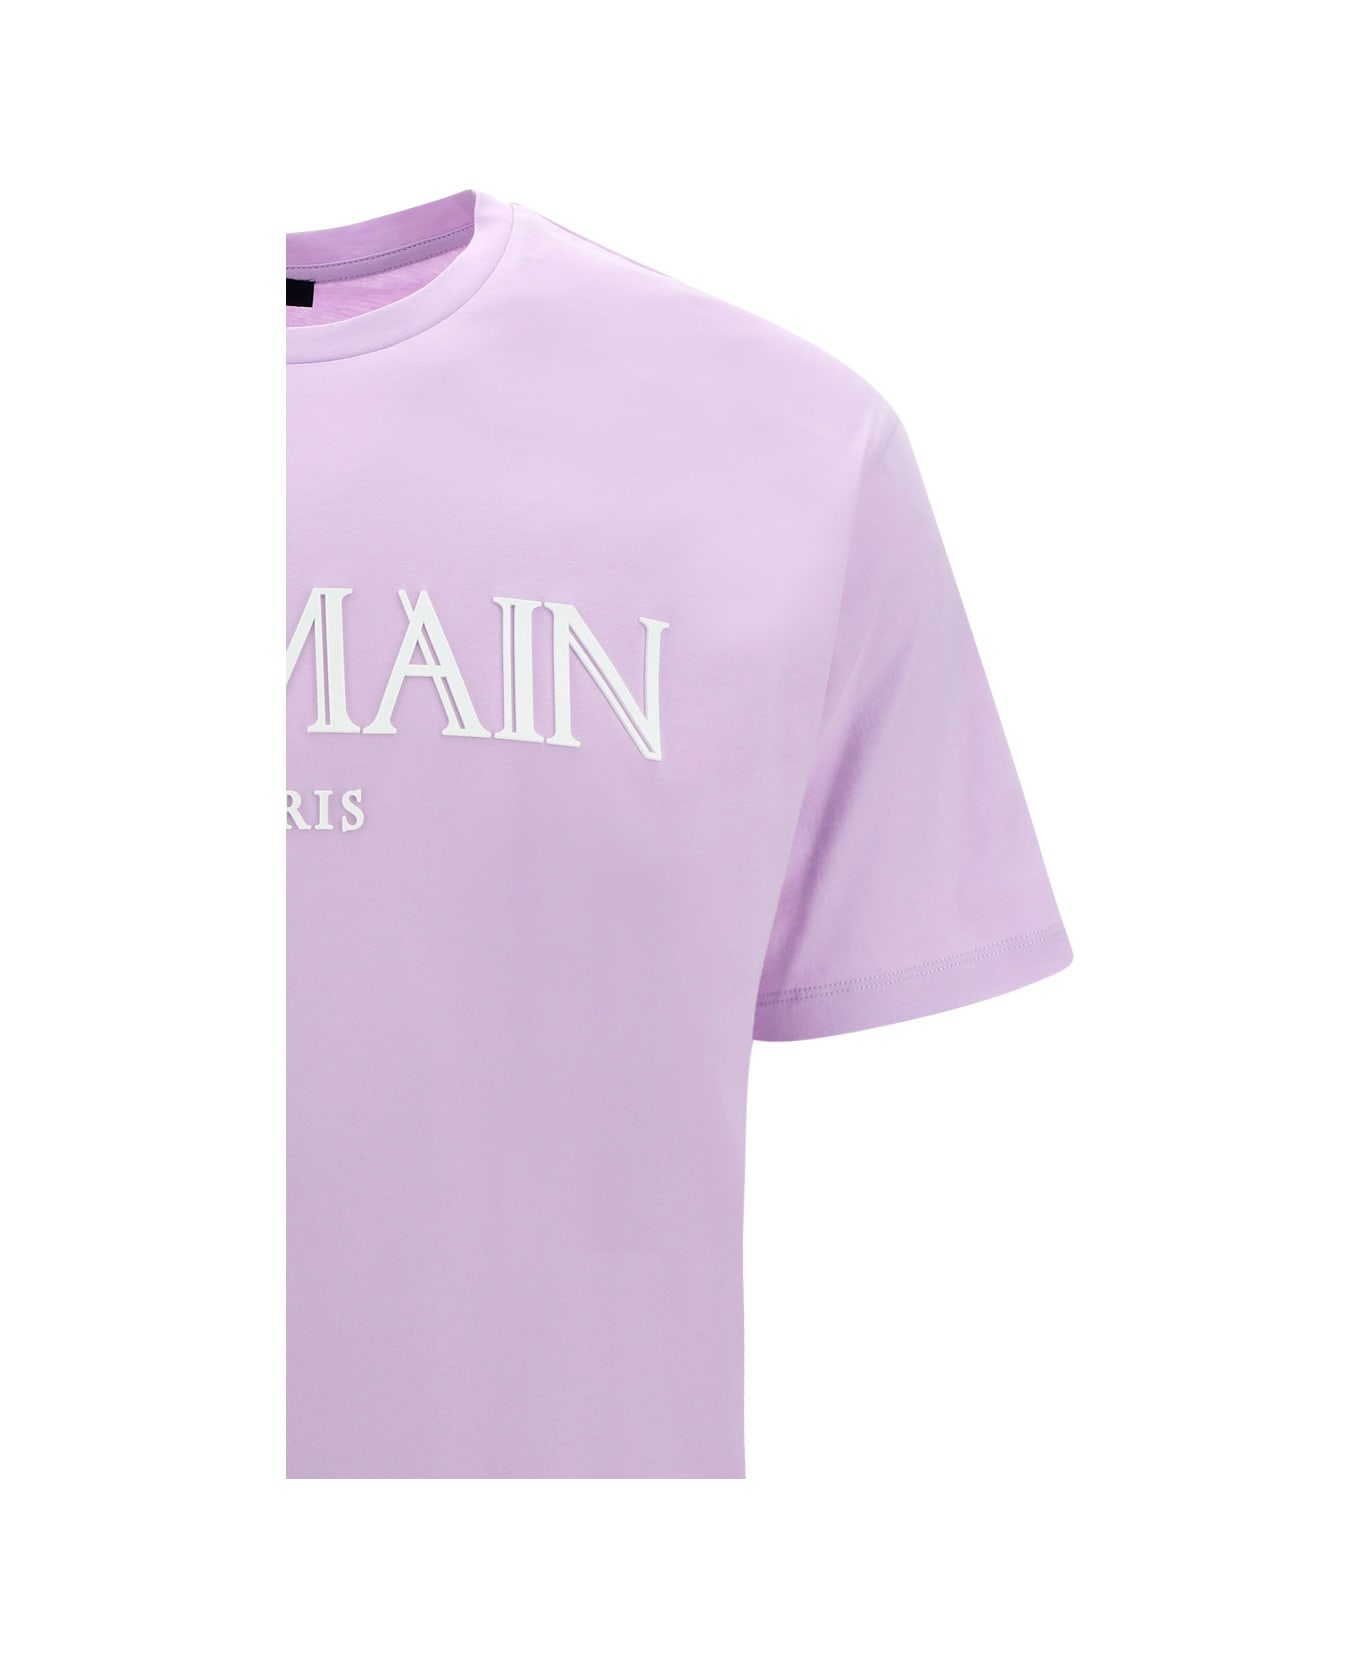 Balmain Rubber Roman T-shirt - Lilas Clair/blanc